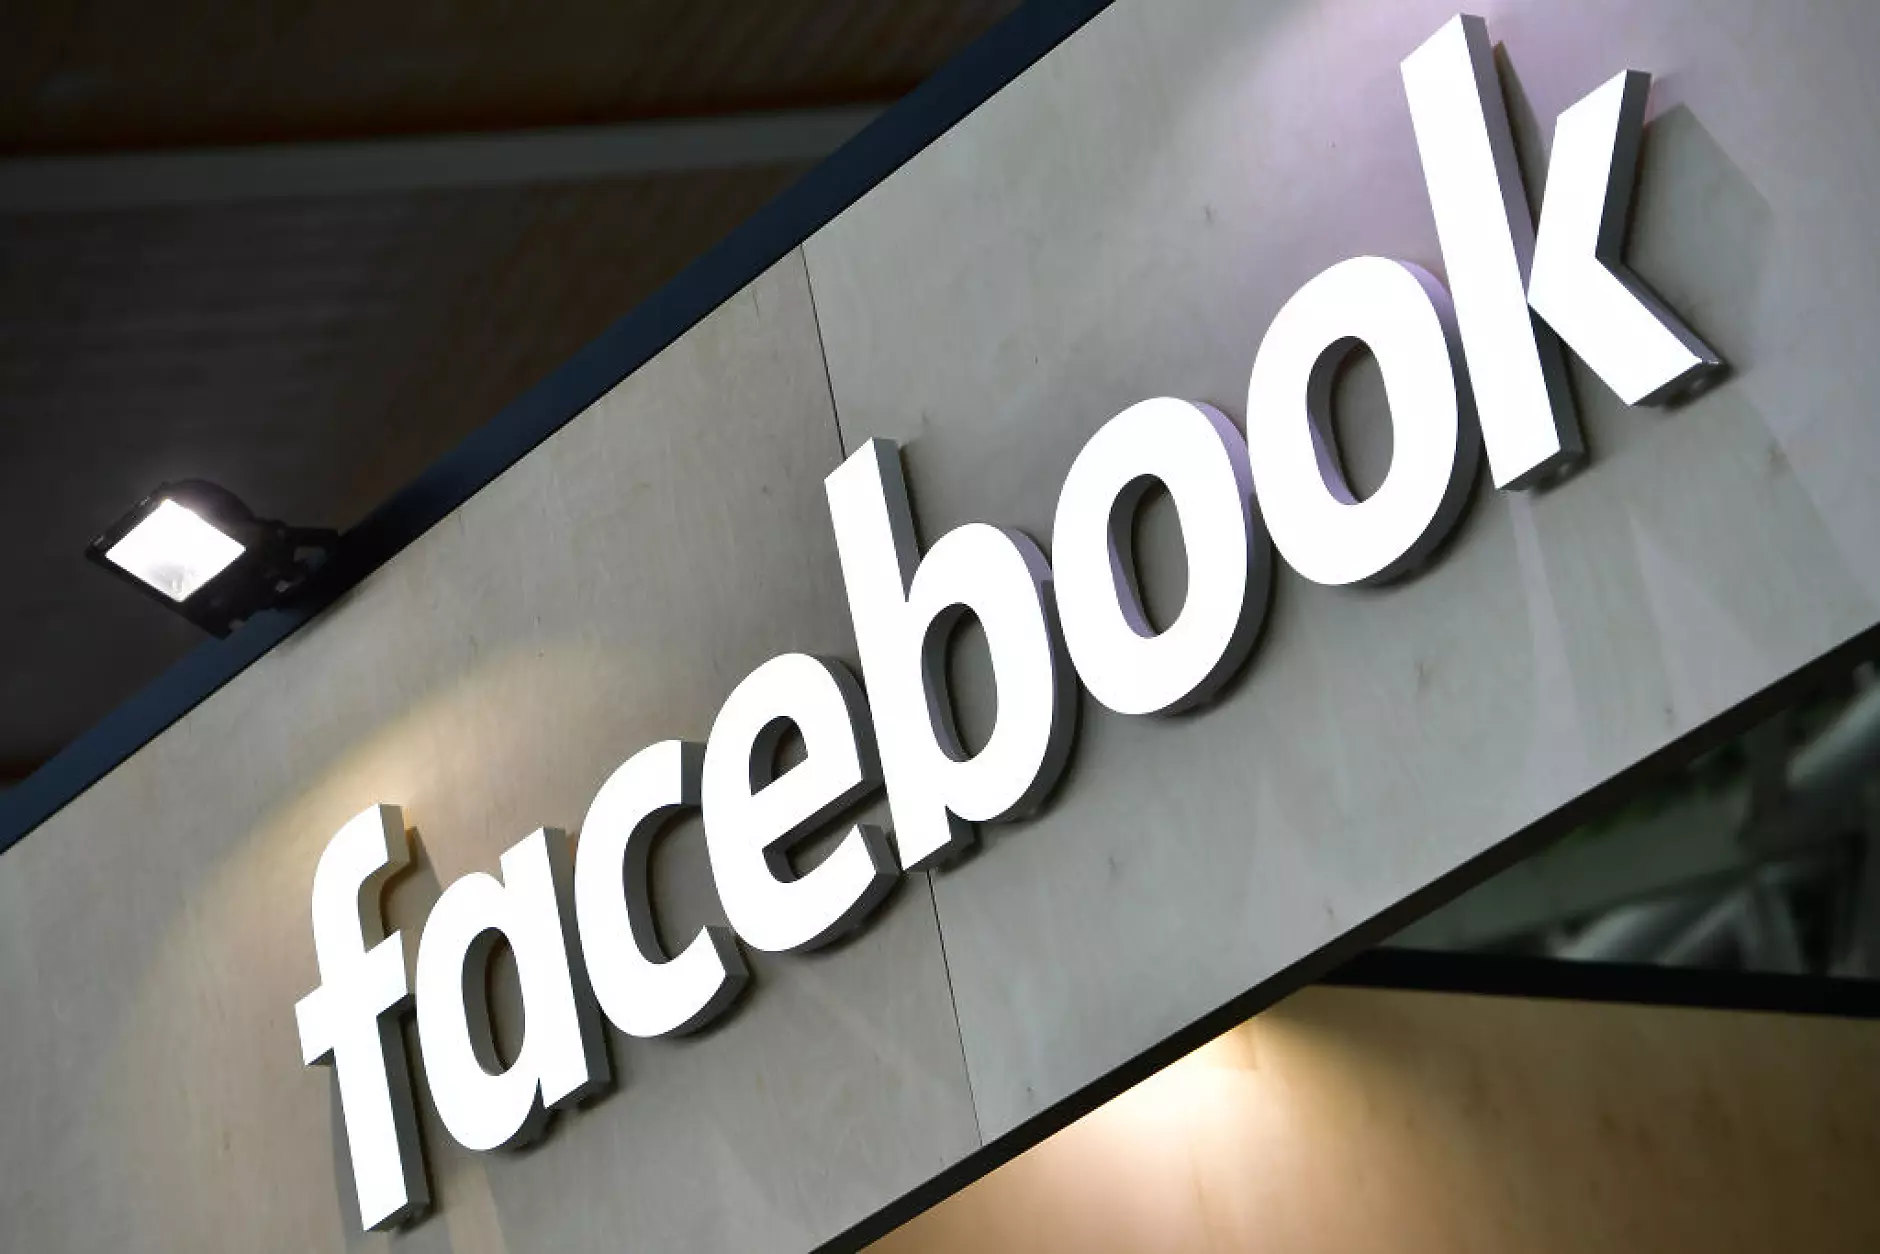 Германски политик получи право на достъп до данните на лица, отправяли обиди във Facebook